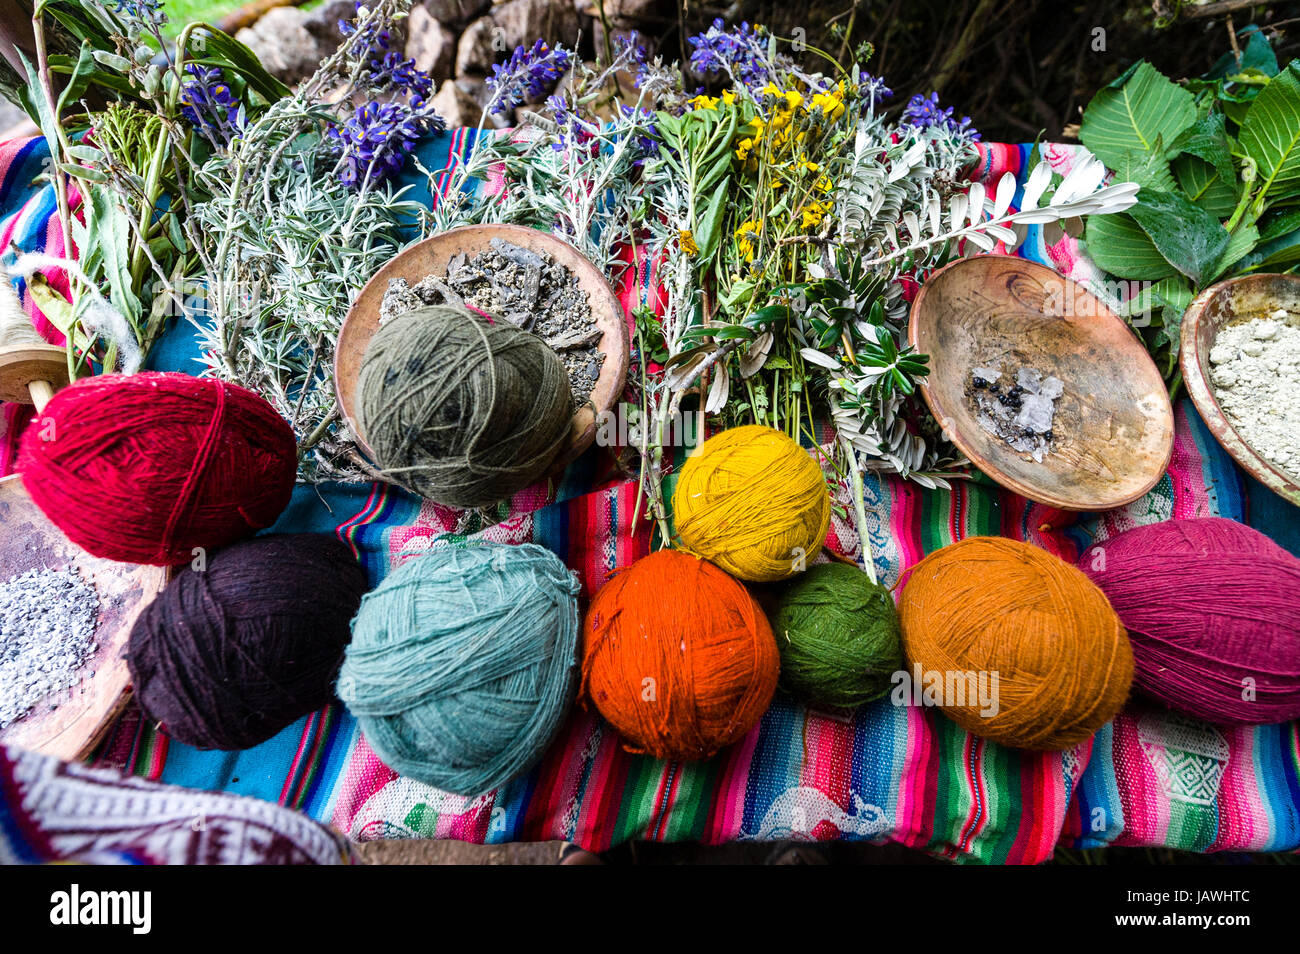 Amaru personas utilizando tintes naturales de lana de oveja color para hacer bolas de hilo. Foto de stock